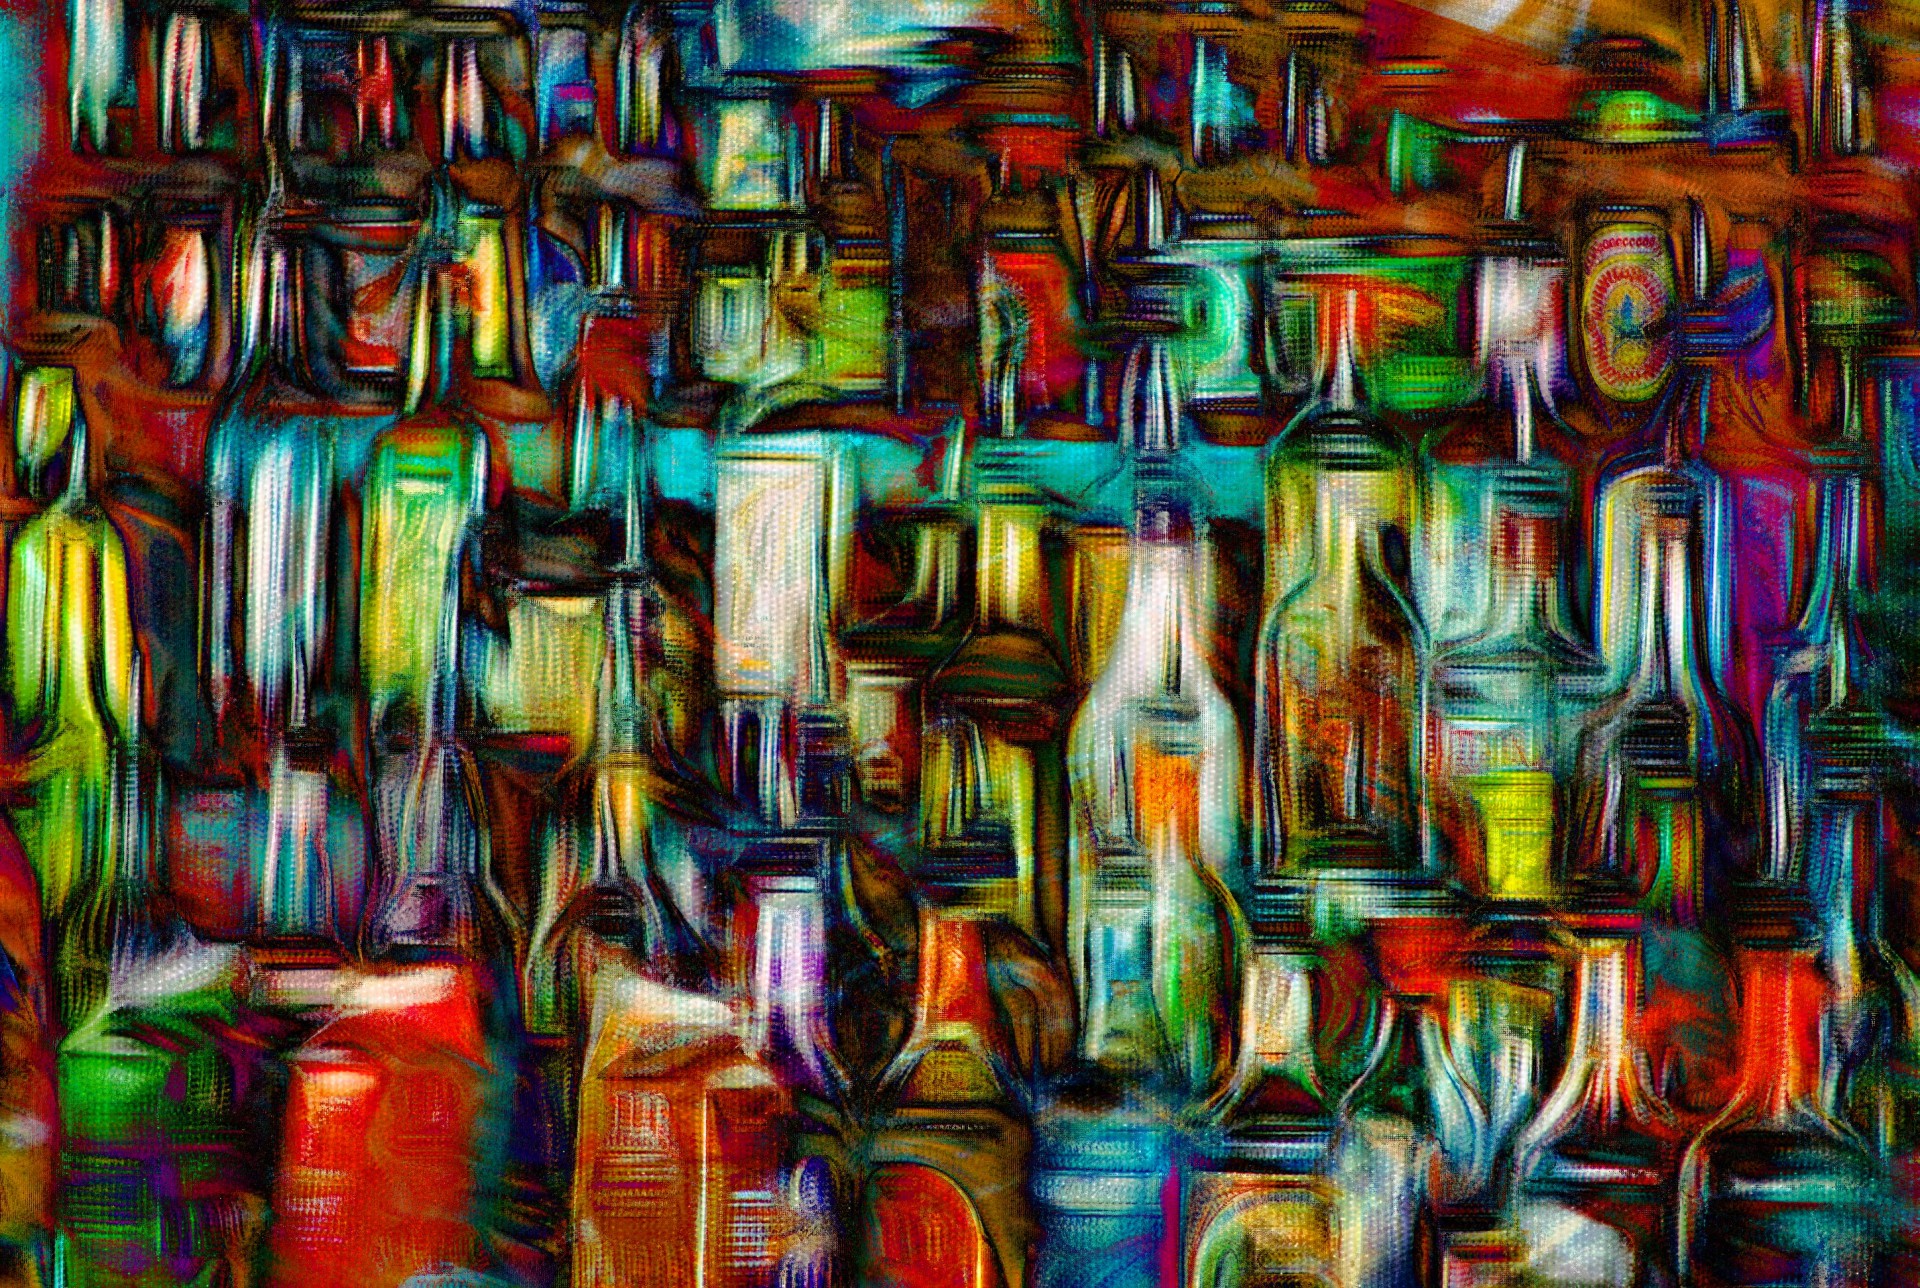 blurred whiskey bottles